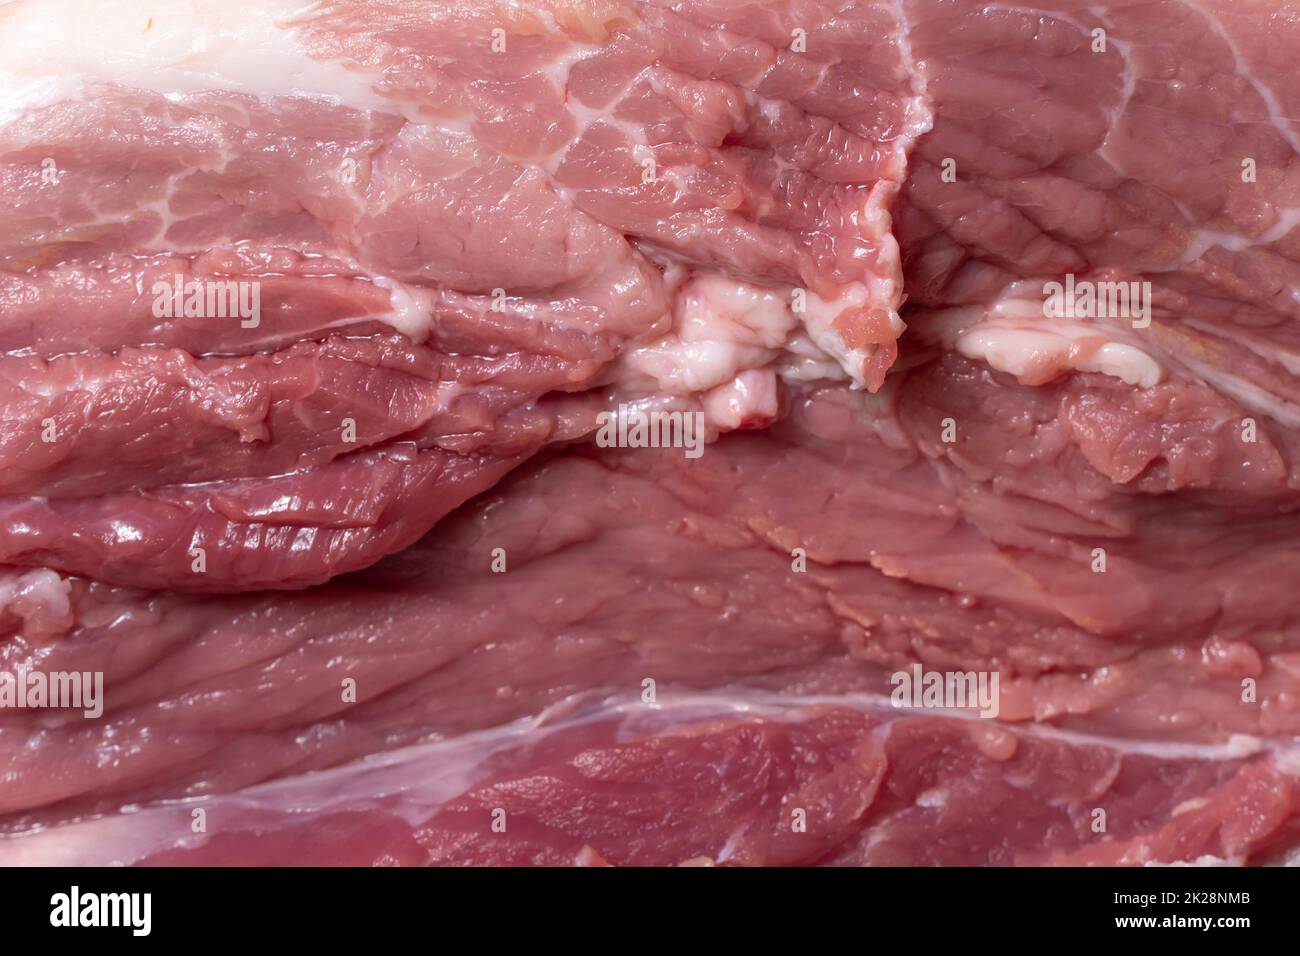 Schneiden Sie das Schweinefleisch oder Rindfleisch mit einem Messer auf dem Tisch in Nahaufnahme. Zubereitung von Fleischgerichten und Nahrungsmitteln. Stücke von rotem Fleisch für Shish Kebab, Barbecue oder Kebab. Rohes frisches Fleisch. Rezept Stockfoto